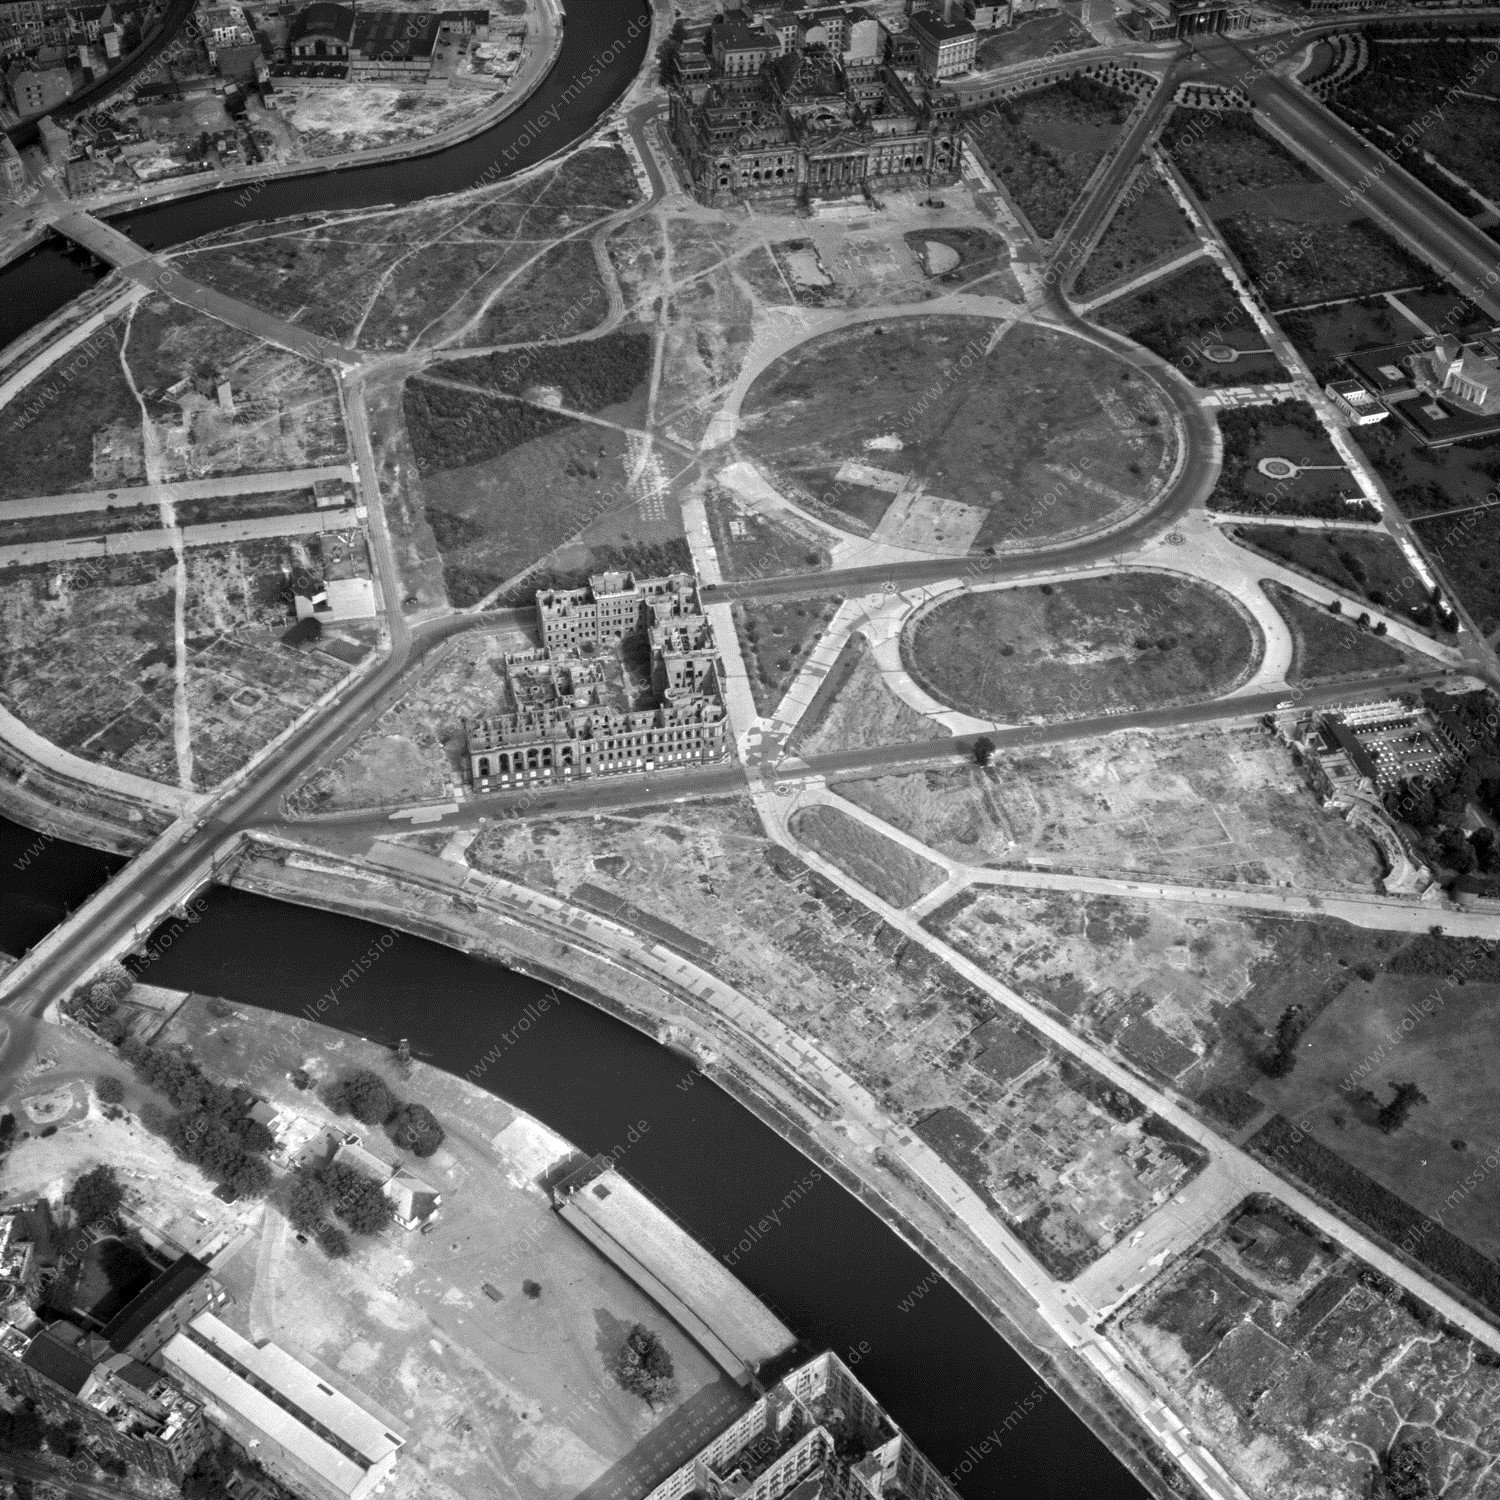 Alte Fotos und Luftbilder von Berlin - Luftbildaufnahme Nr. 07 - Historische Luftaufnahmen von West-Berlin aus dem Jahr 1954 - Flugstrecke Xray